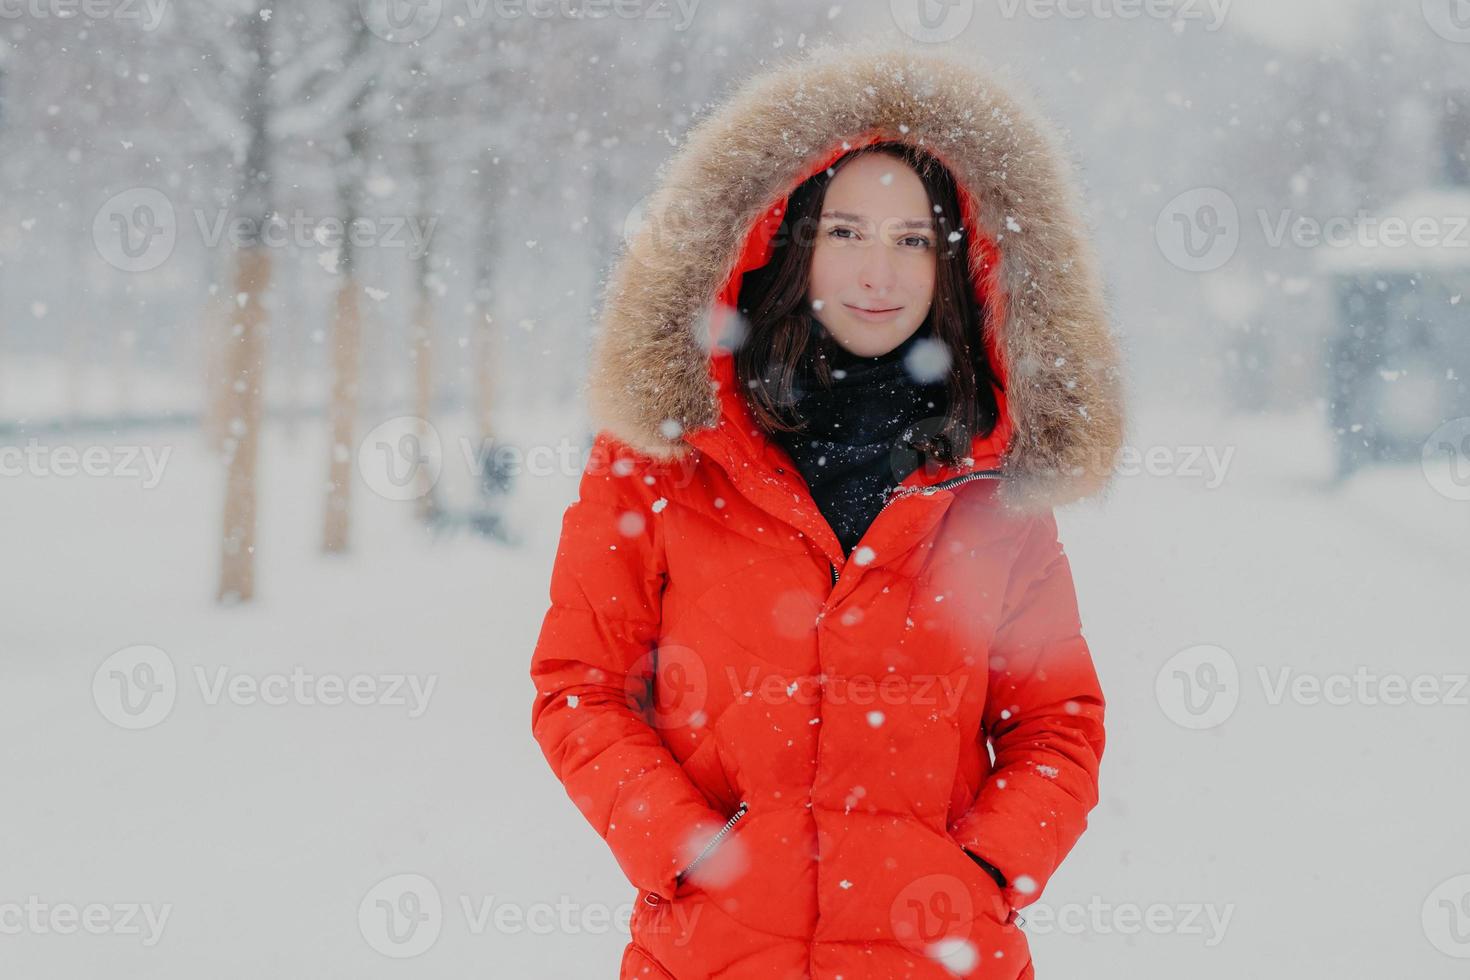 mooi vrouwelijk model in rode jas, stads buiten tijdens sneeuwval, kijkt met donkere ogen naar camera, gaat wandelen met vriendje, ademt frisse lucht. mensen, wintertijd en vrije tijd concept foto